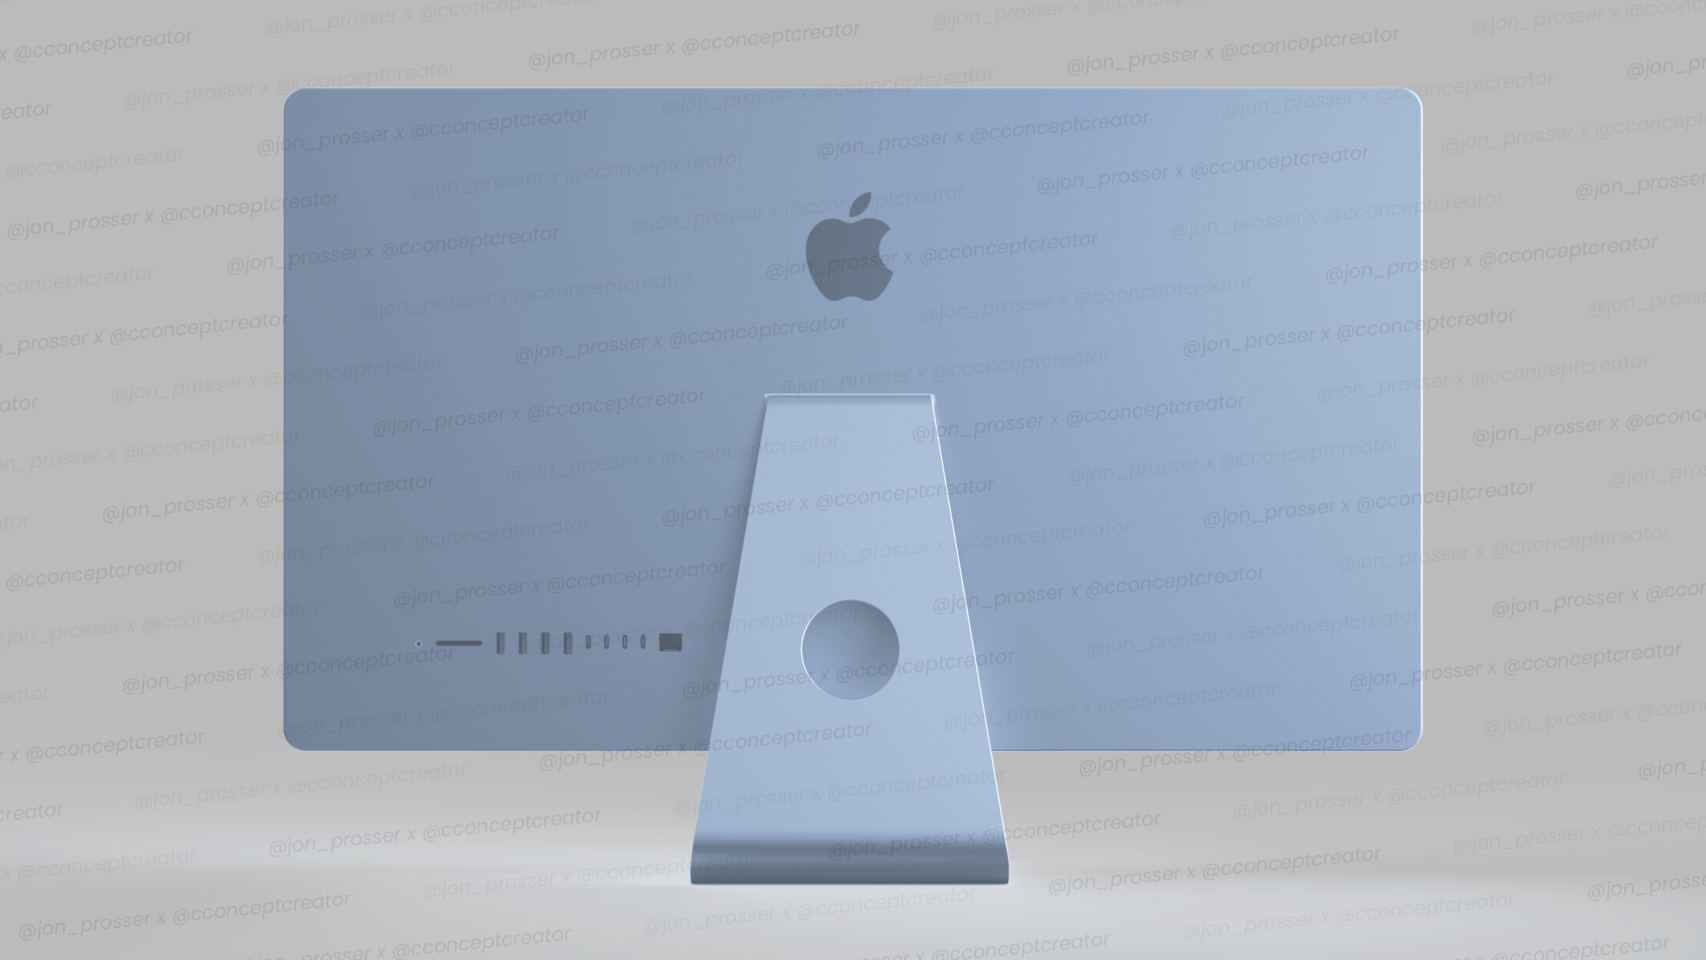 Así sería el nuevo iMac en color azul